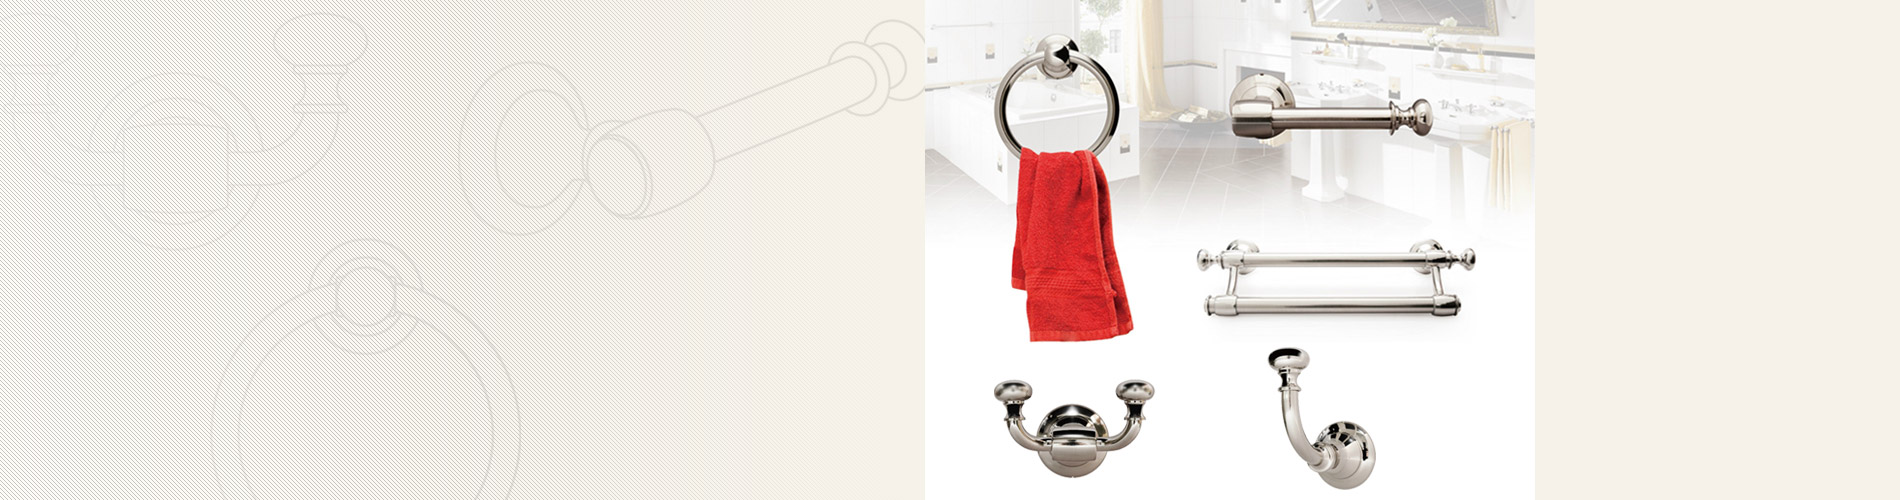 Accesorios de baño Nuestro hardware de baño contiene toallero simple/doble, toallero, porta pañuelos y ganchos para prendas.